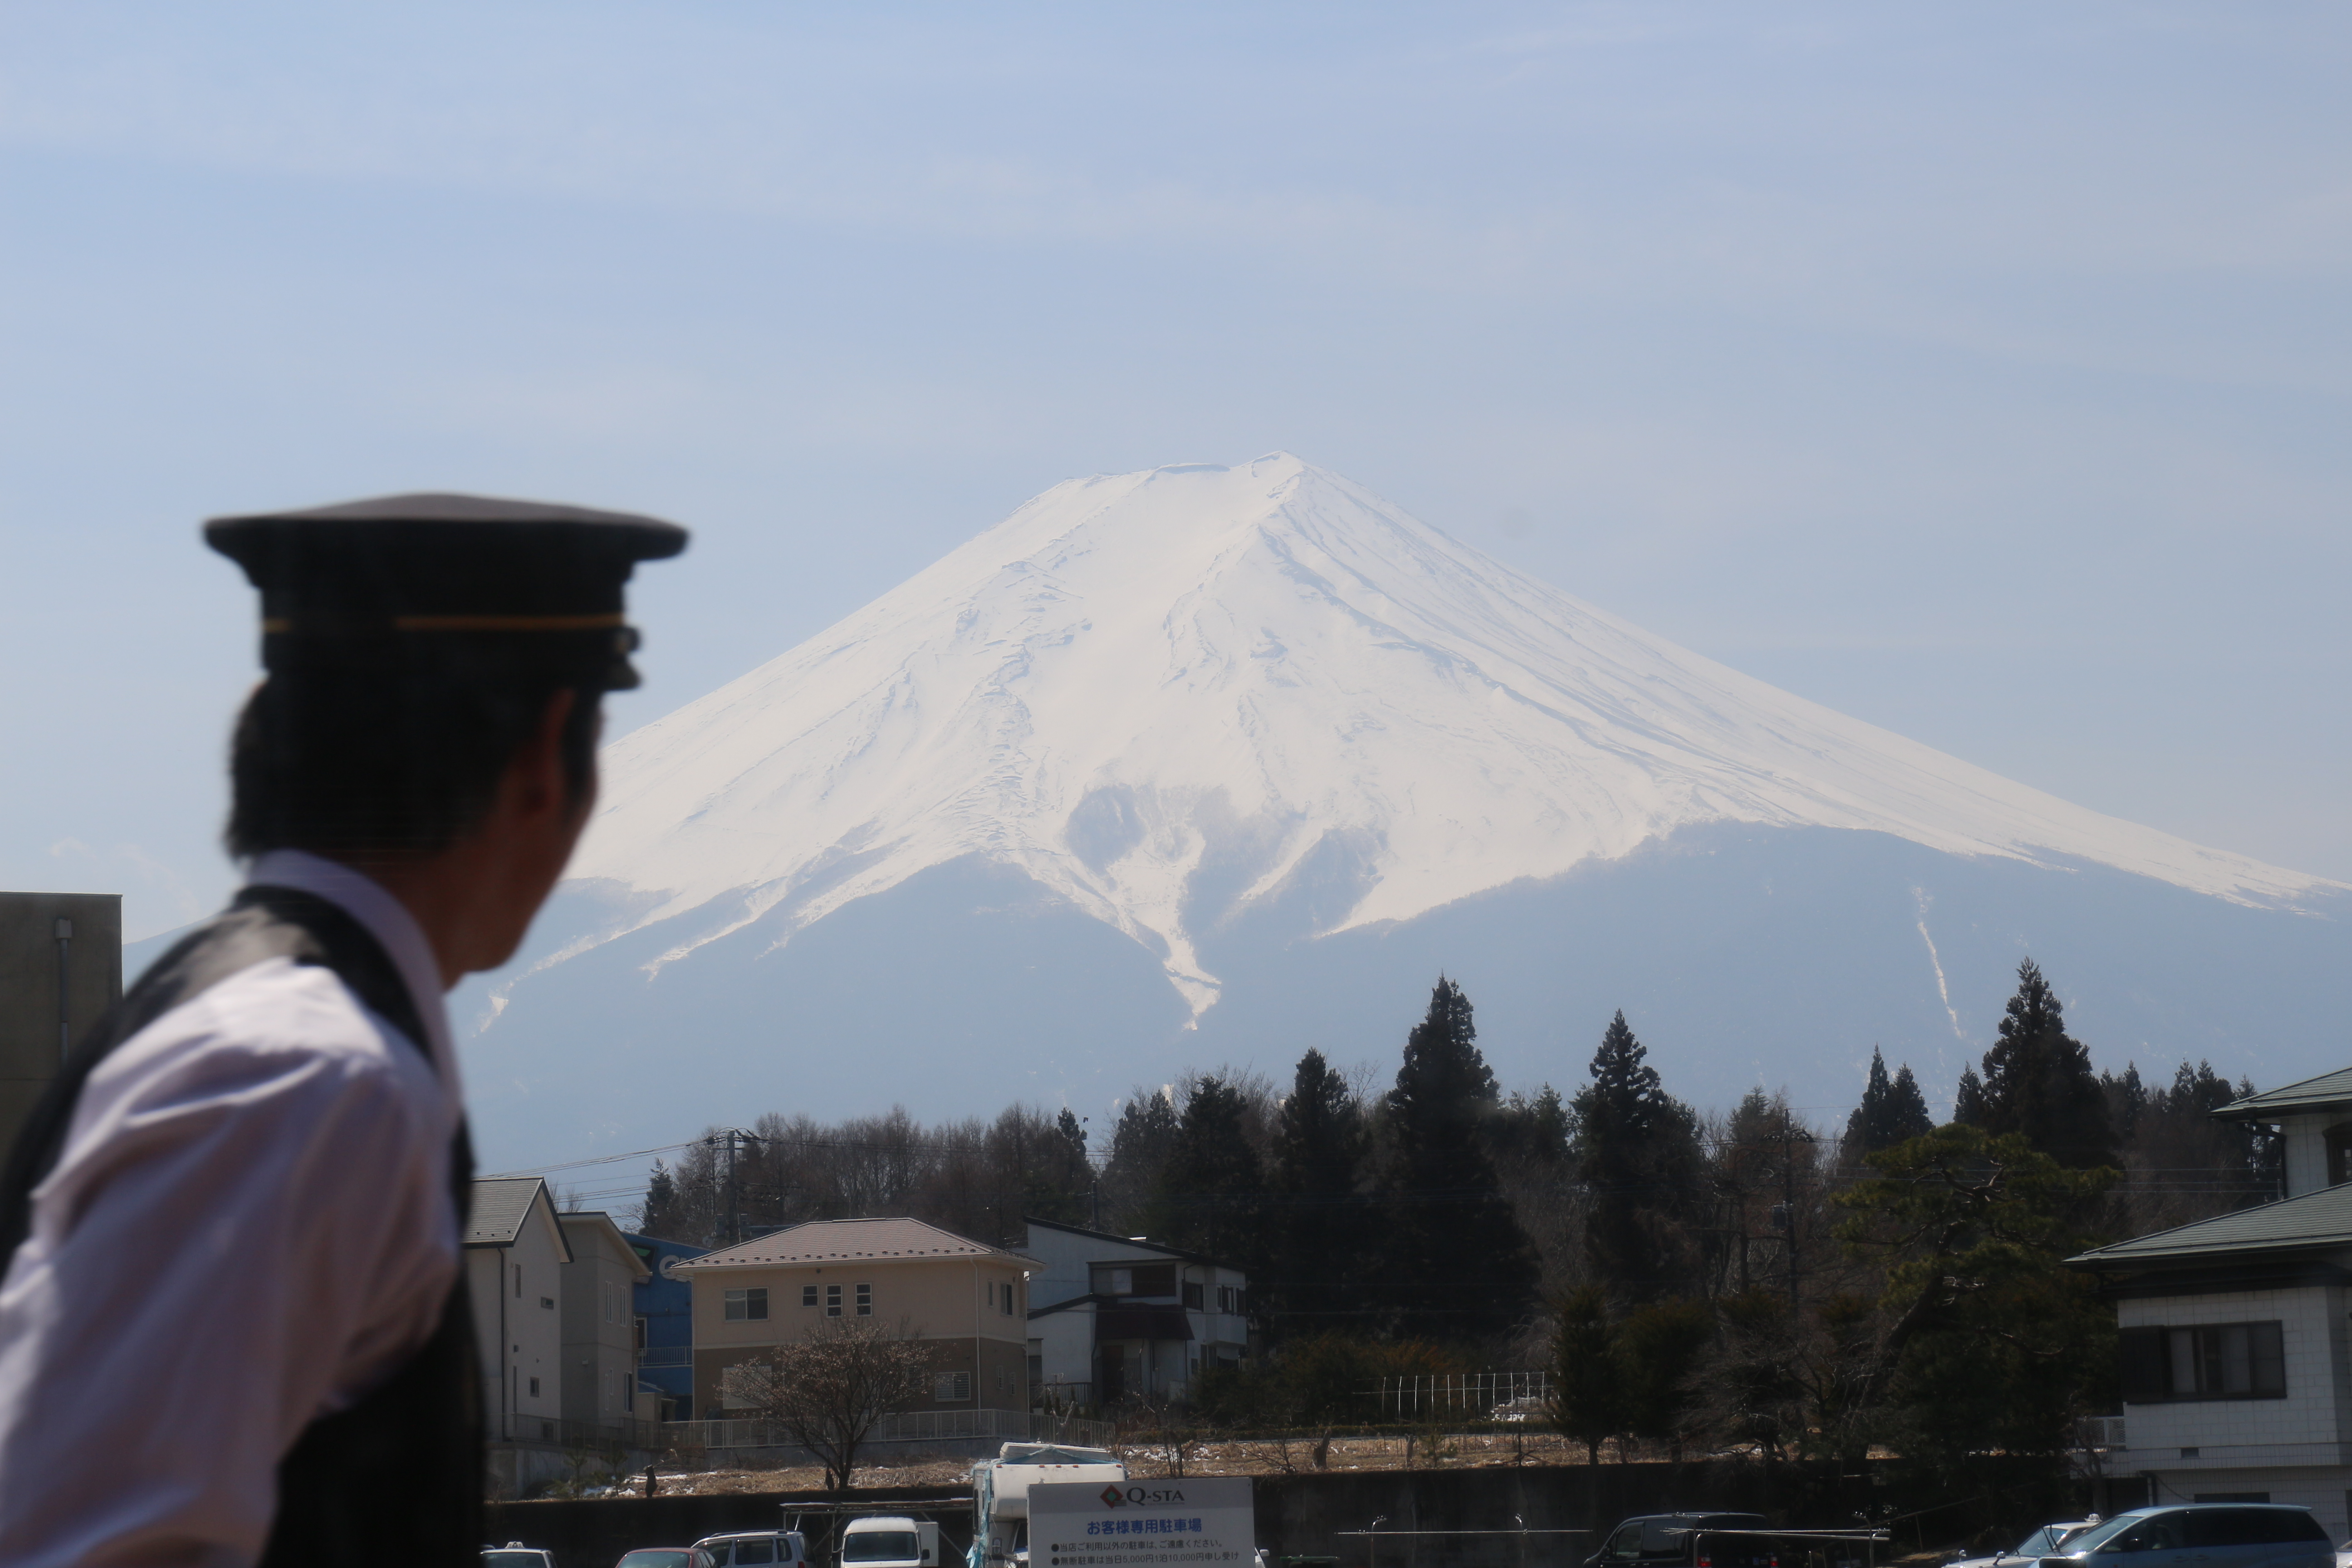 Une photo du mont Fuji. Au premier plan, un peu flouté, un employé de la gare en uniforme regarde en direction de la montagne.